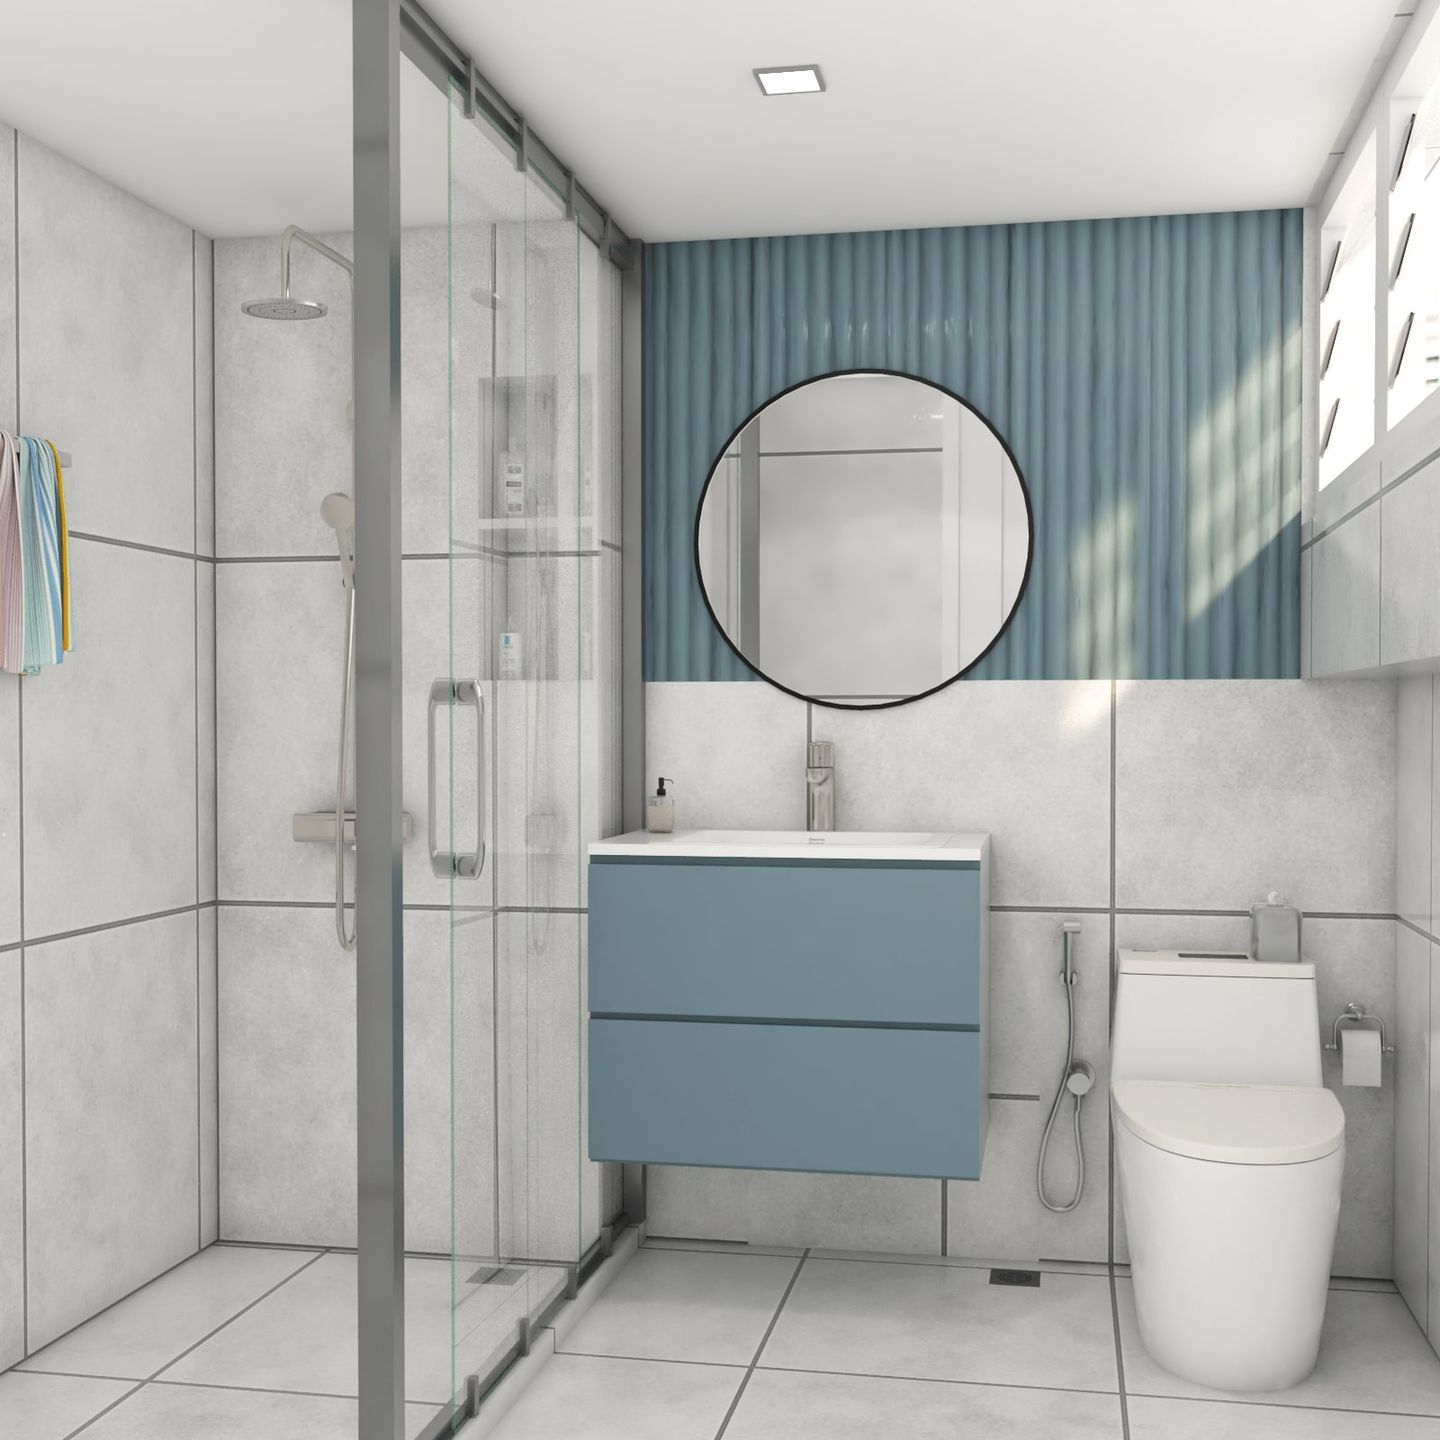 Matte Light Blue And White Tiles For Bathroom Walls - Livspace